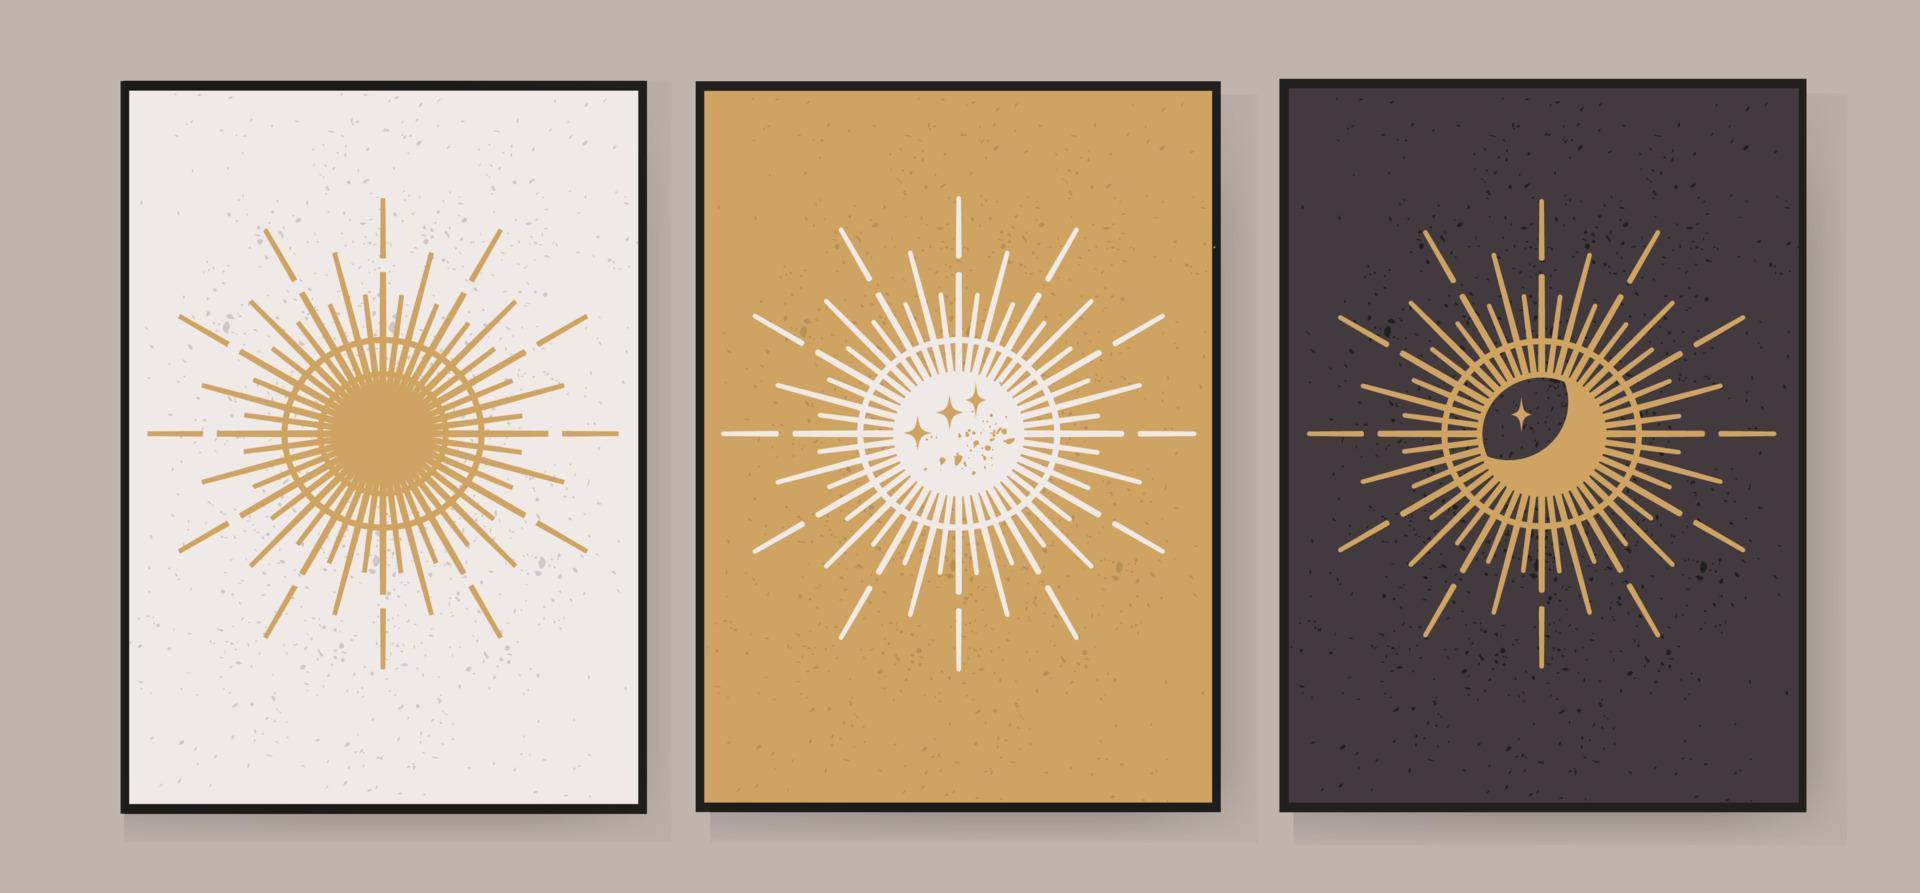 ensemble de 3 illustrations abstraites créatives avec un soleil magique pour décorer des murs, décorer des cartes postales ou des brochures. vecteur eps10.